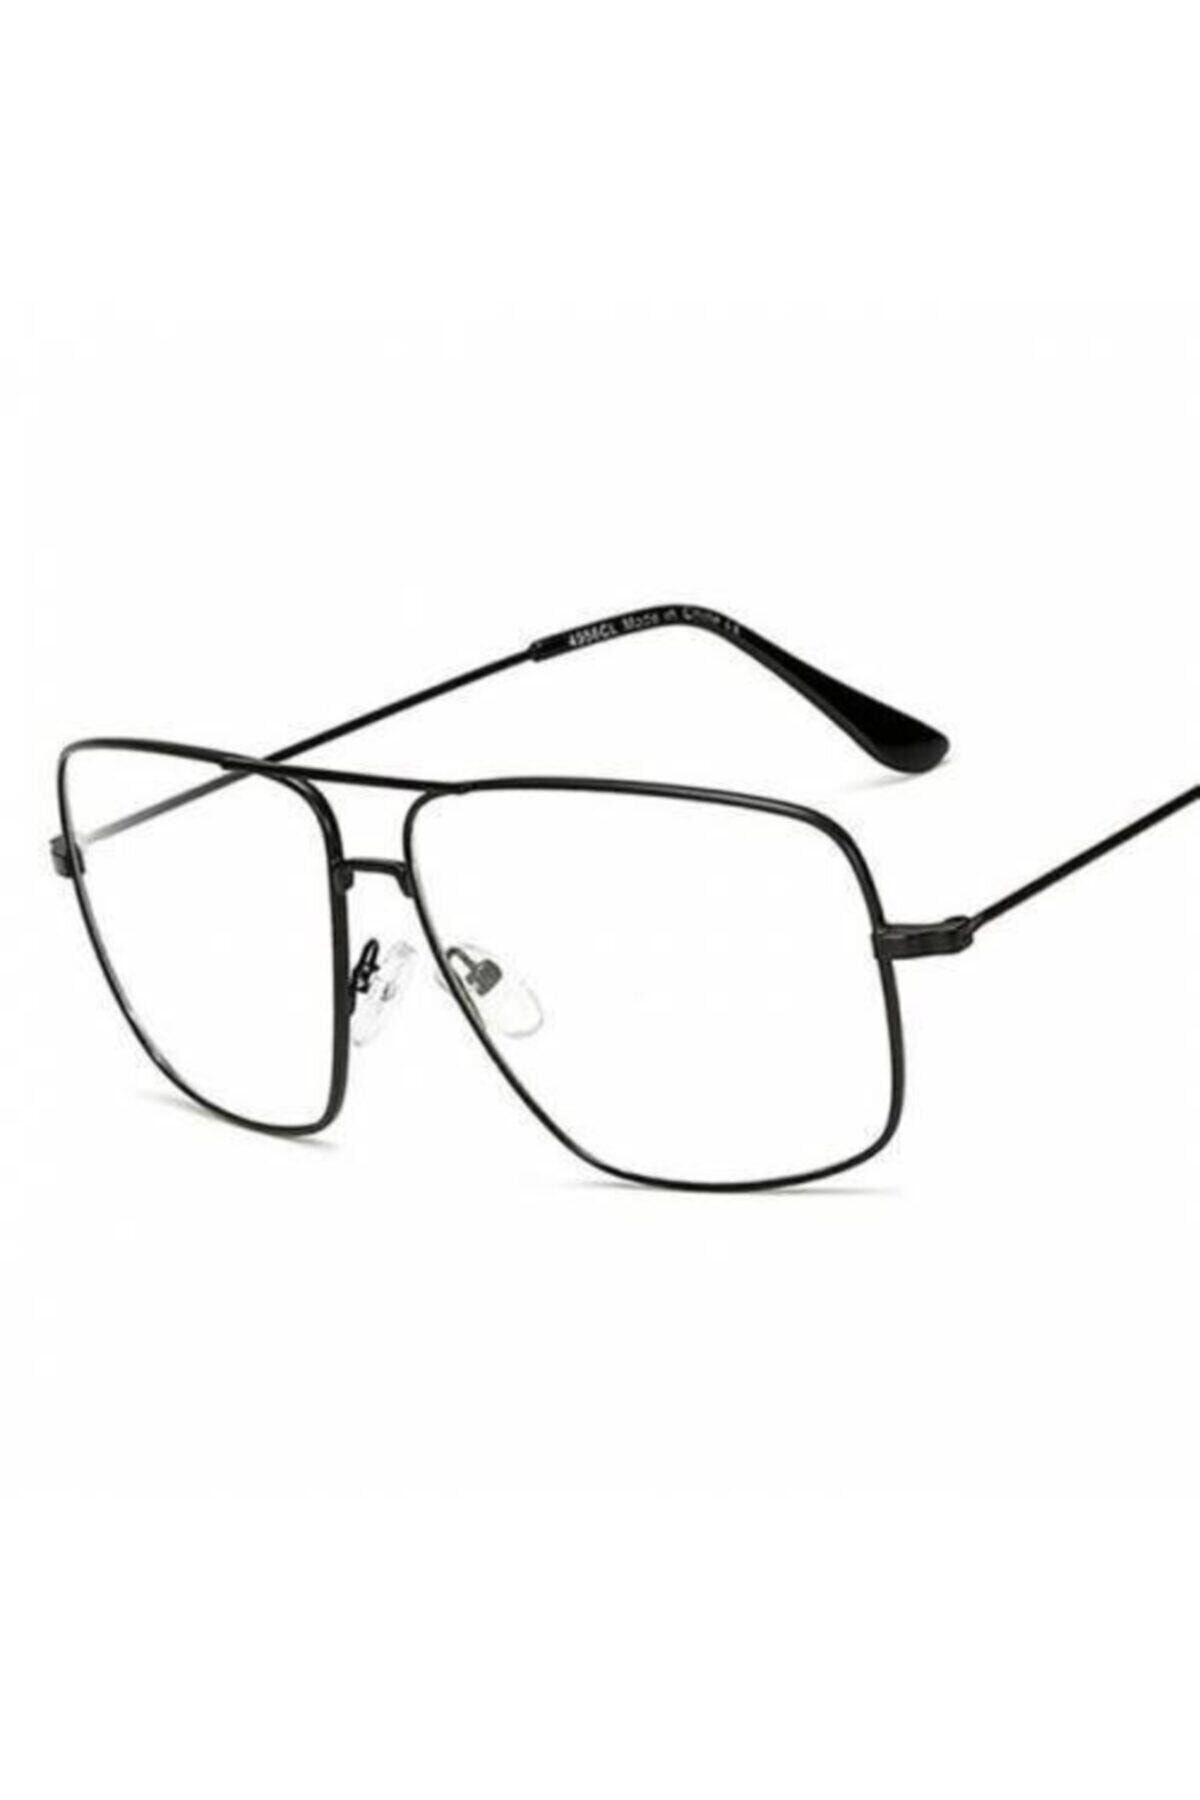 büyükmarket Yeni Tasarım Reynmen Gözlüğü Damla Pilot Çerçeve Klasik Tarz Erkek Gözlük